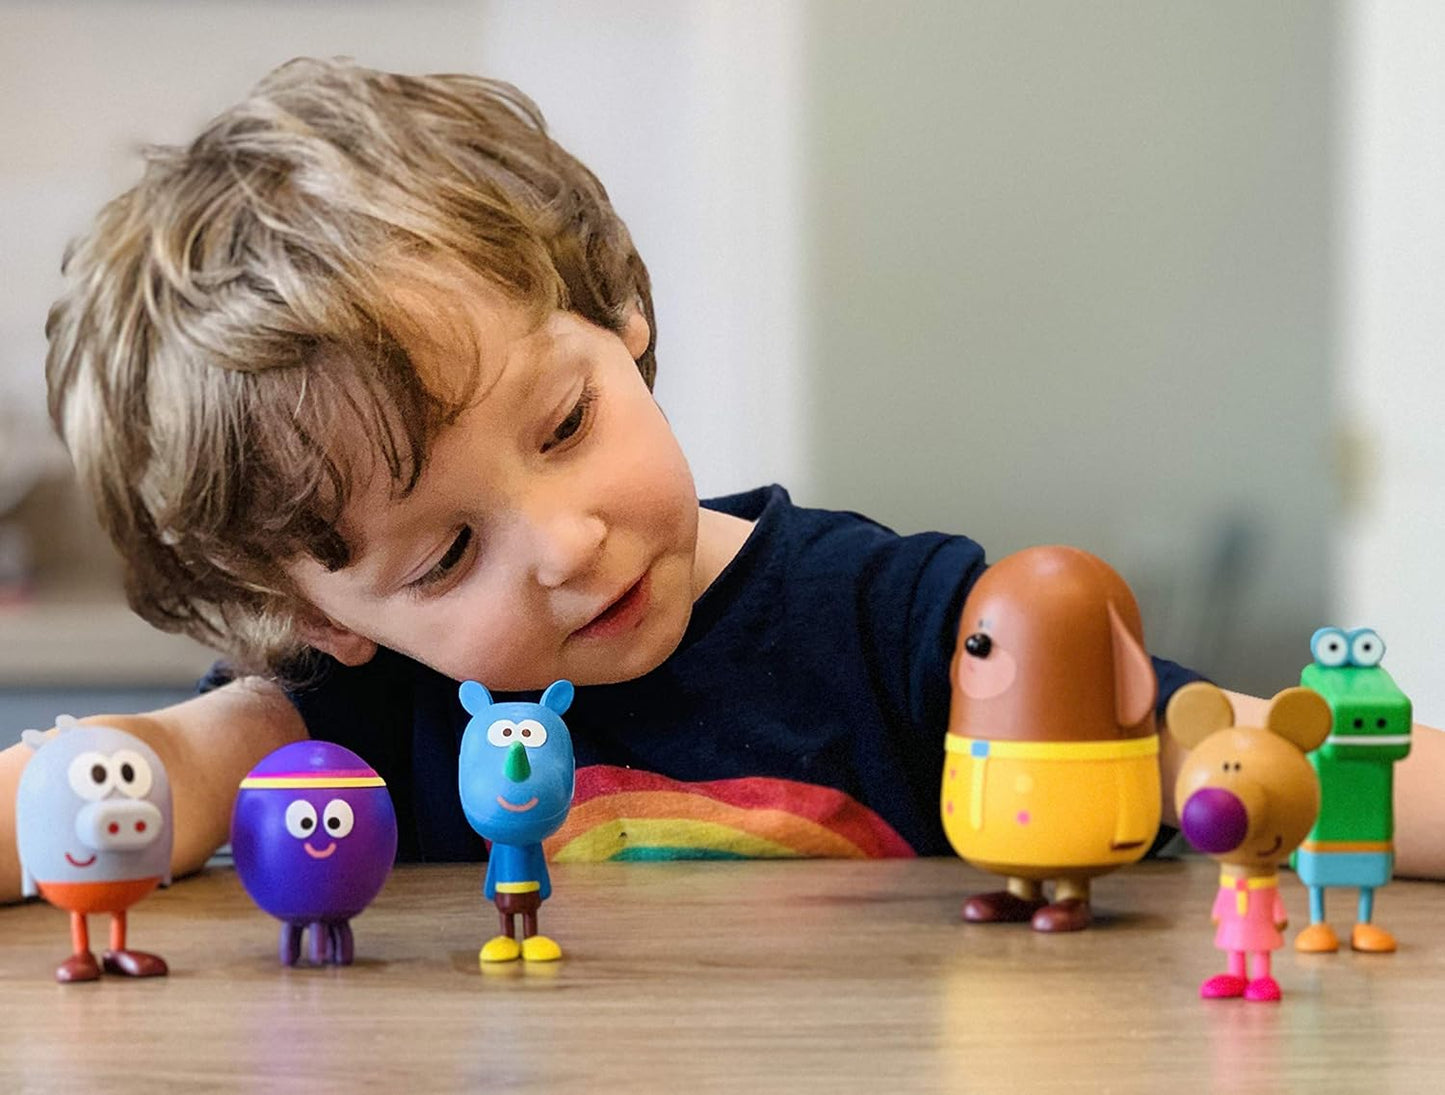 Hey Duggee  O conjunto de figuras de brinquedo inclui Duggee e seus esquilos. Brinquedos perfeitos para crianças do programa de TV CBeebies.